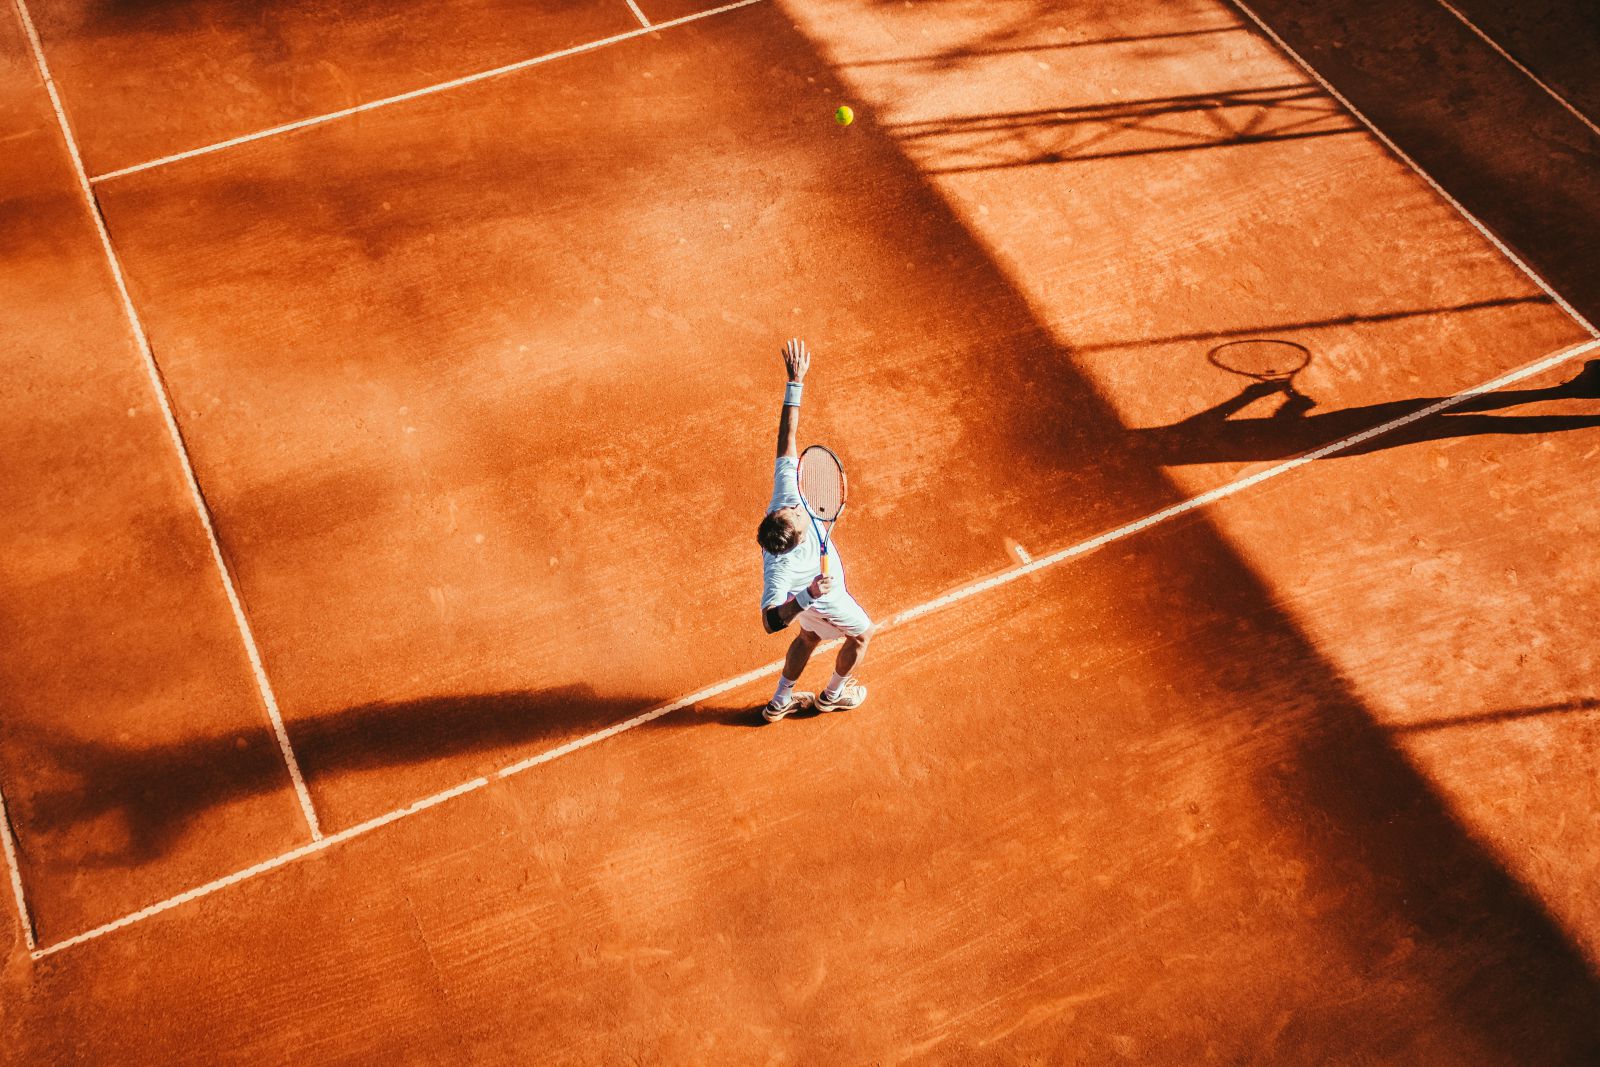 vertu thuận tiện khi đi chơi tennis